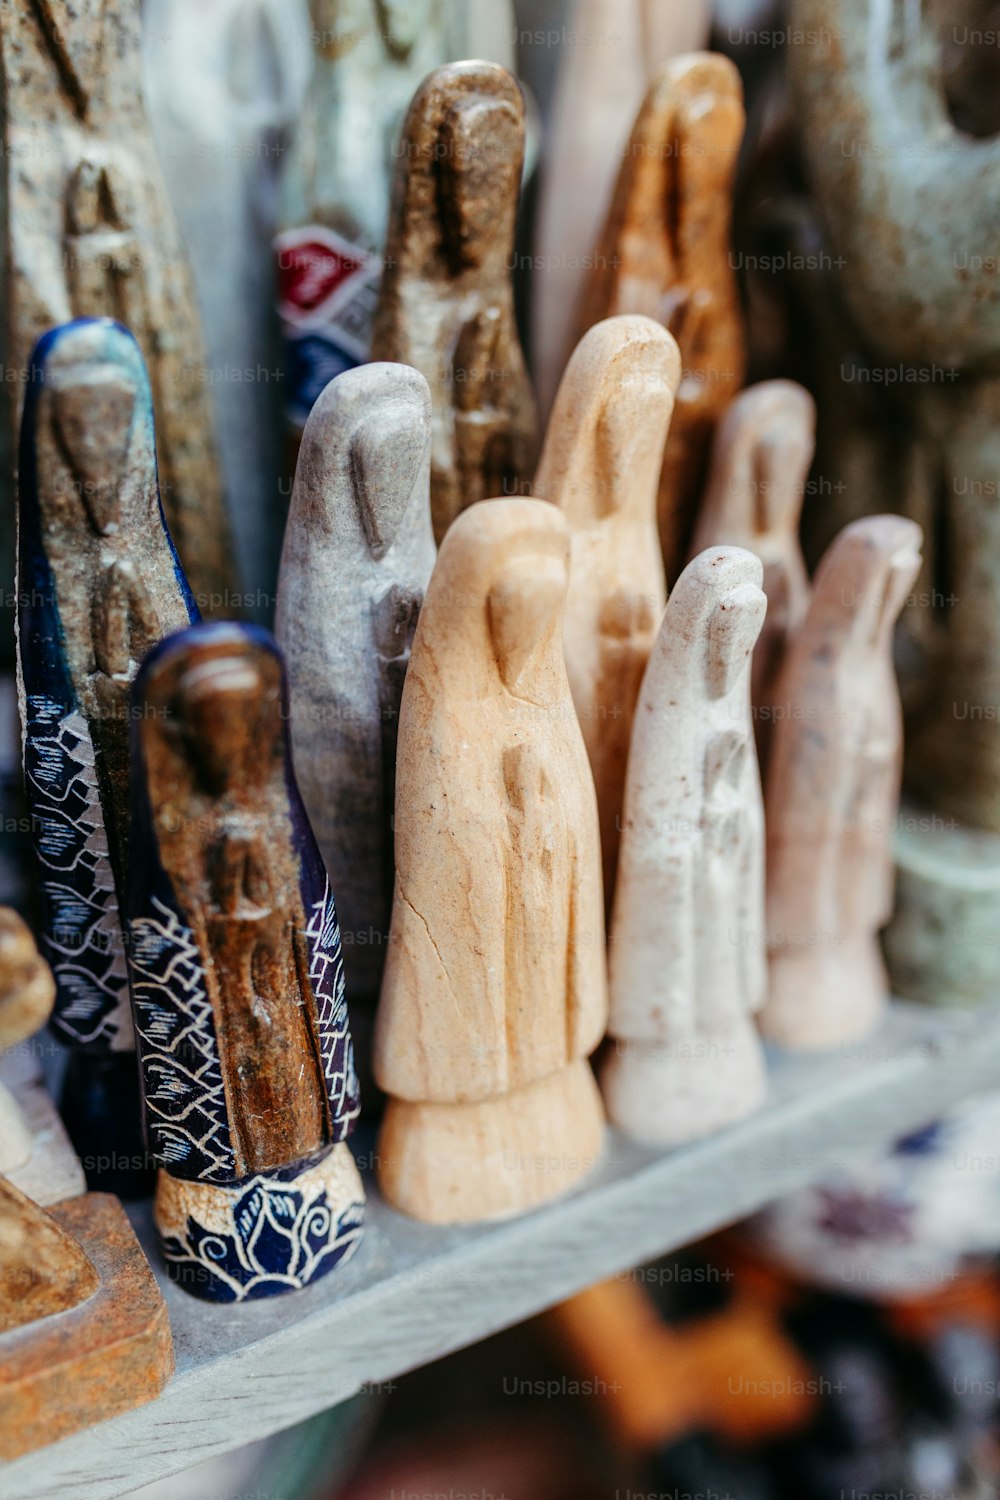 Un estante lleno de figuras de madera de diferentes formas y tamaños